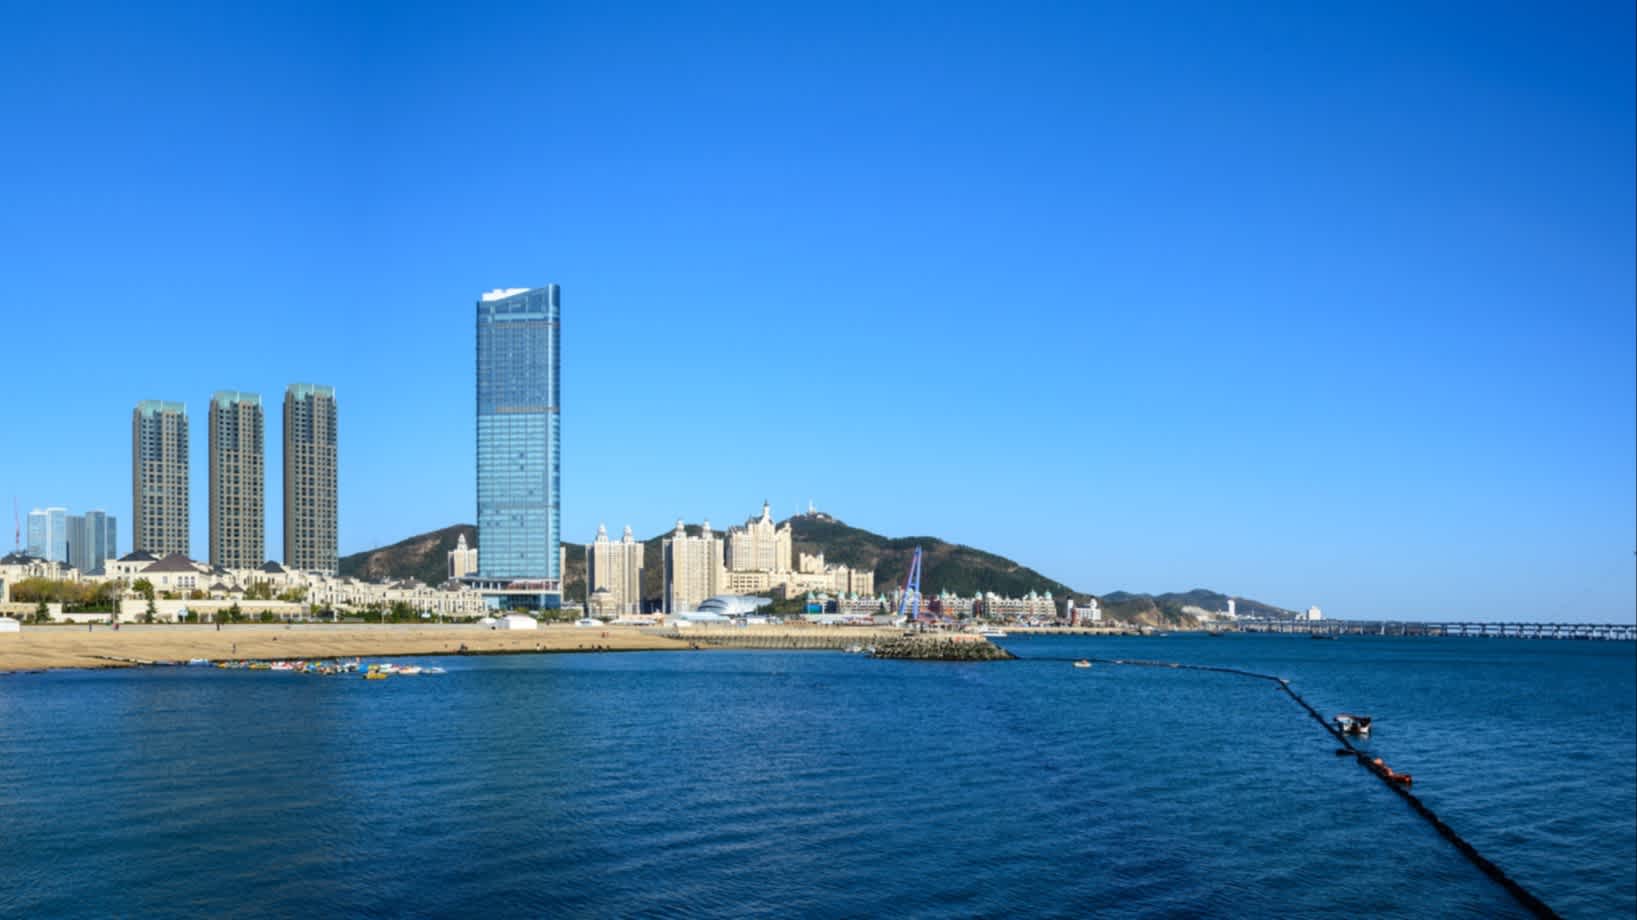 Aussicht auf den Strand und das Meer in Dalian, China bei strahlend Blauem Himmel und mit Hochhäusern im Bild.